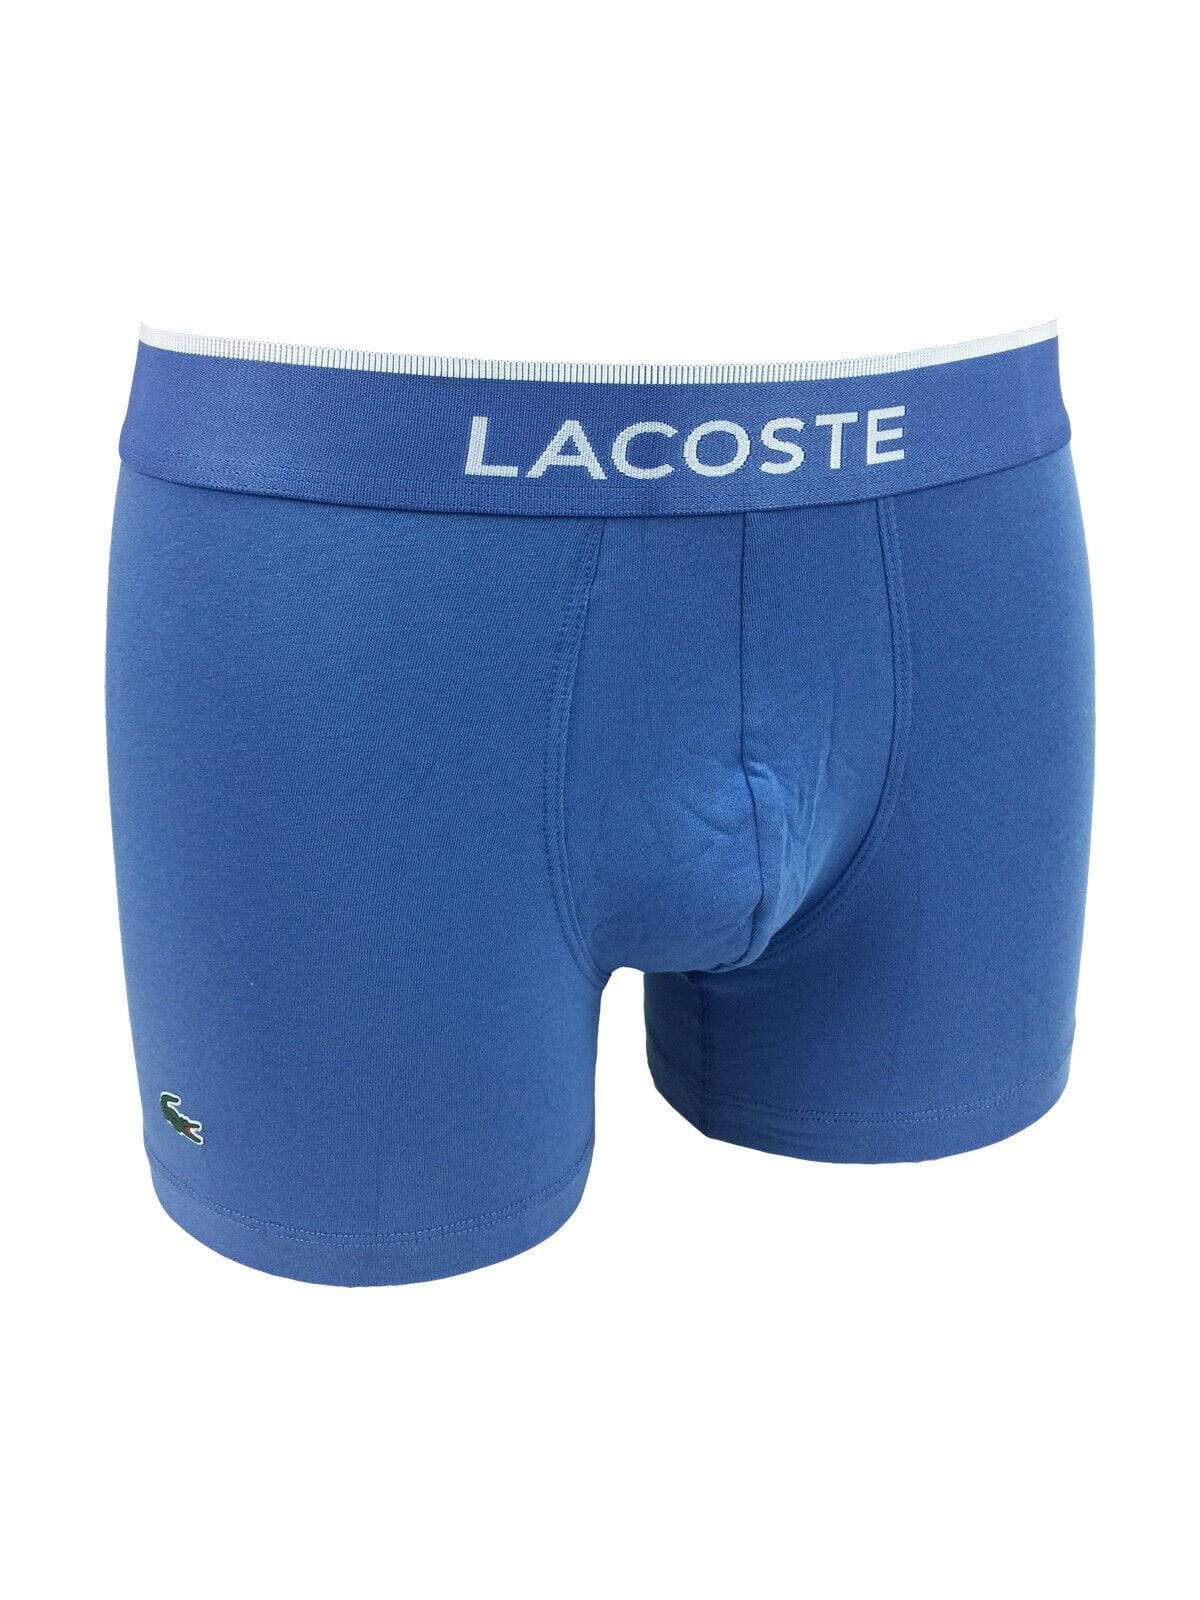 Lacoste Mens Underwear L / Blue Cotton Boxer